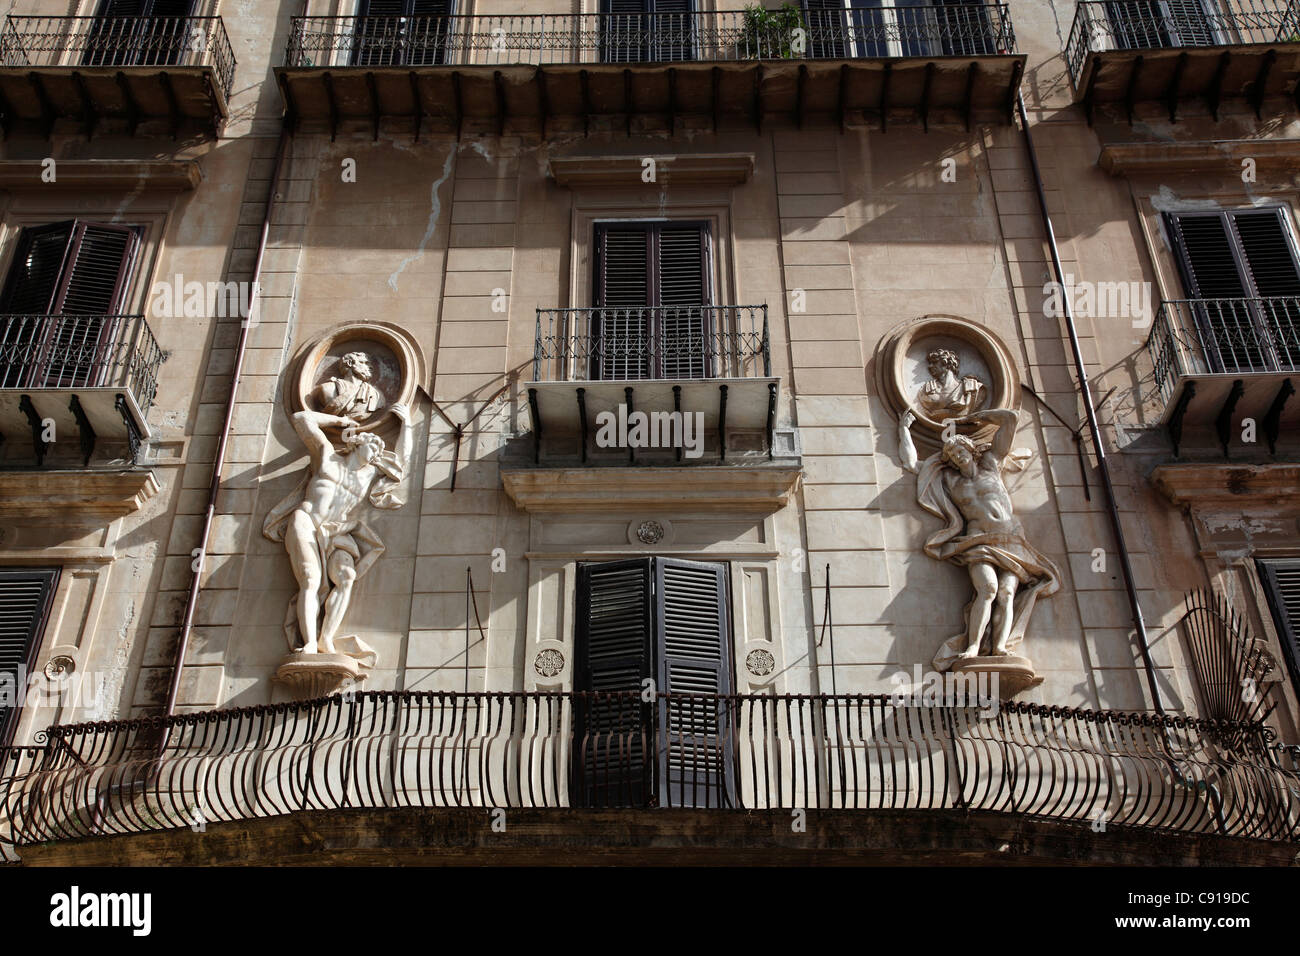 Las características de la arquitectura barroca siciliana statuery y adornos tallados en edificios históricos. Foto de stock